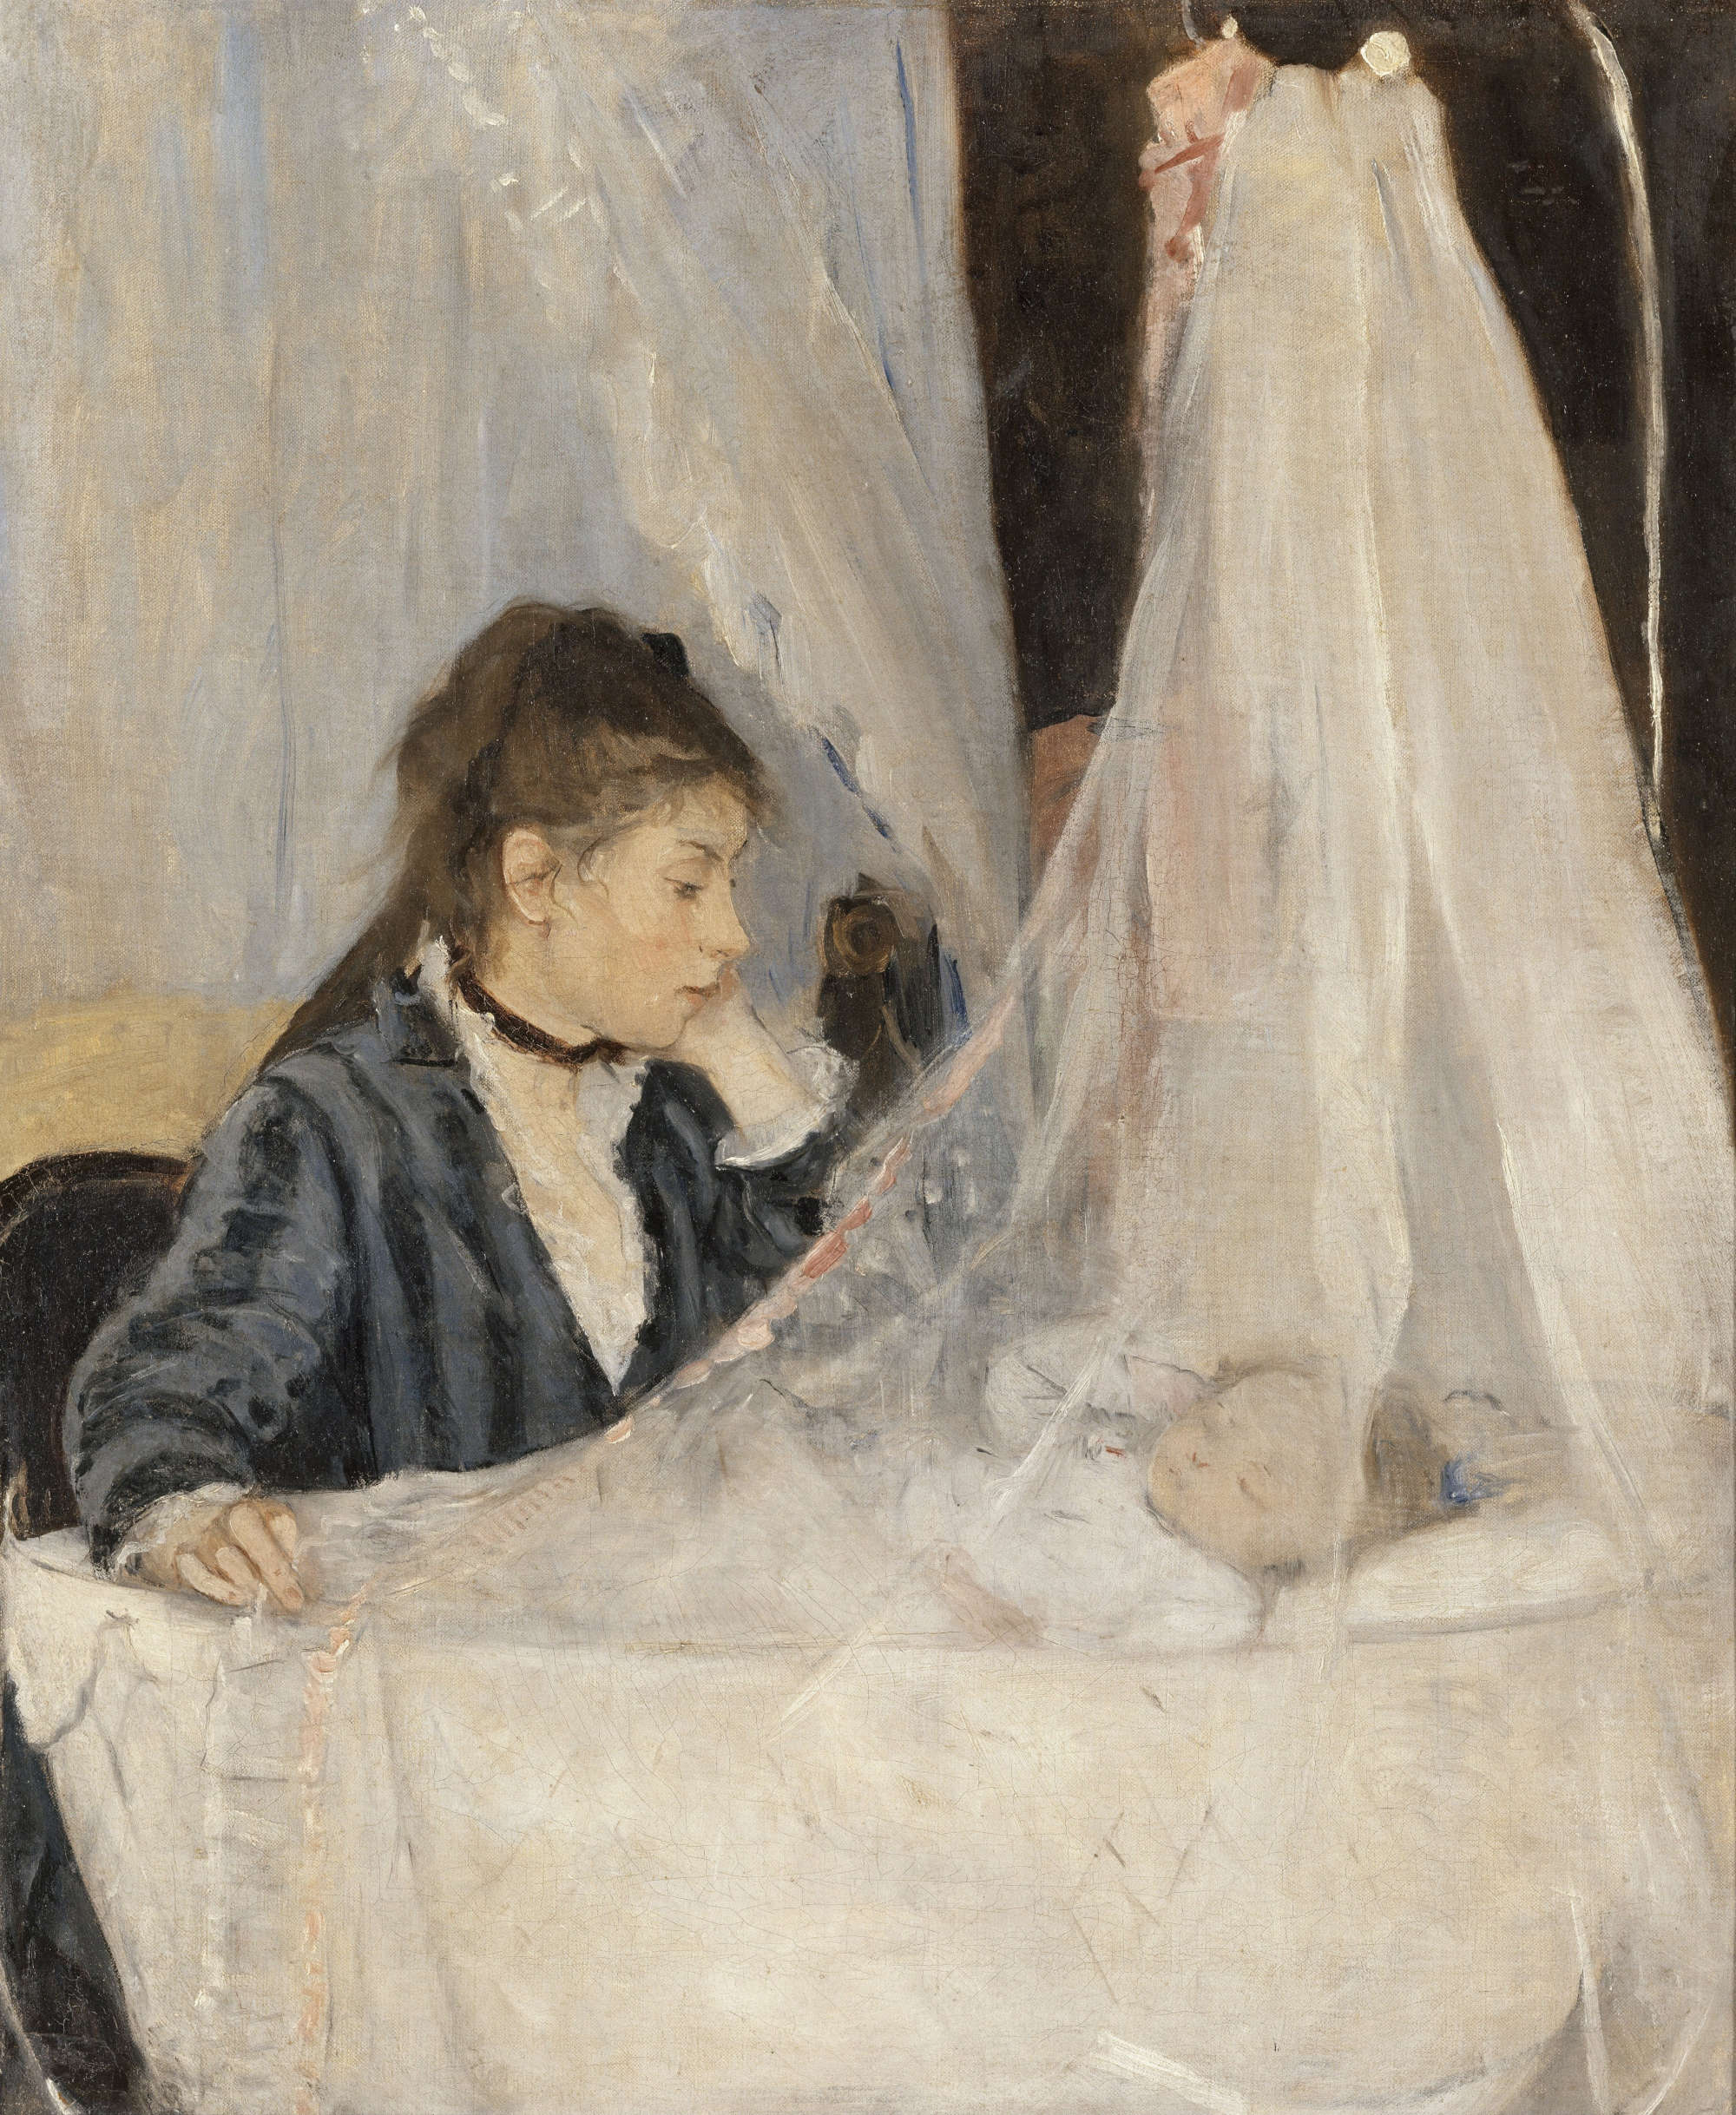 Berthe Morisot, The Cradle (1872; oil on canvas, 46 x 56 cm; Paris, Musée d'Orsay)